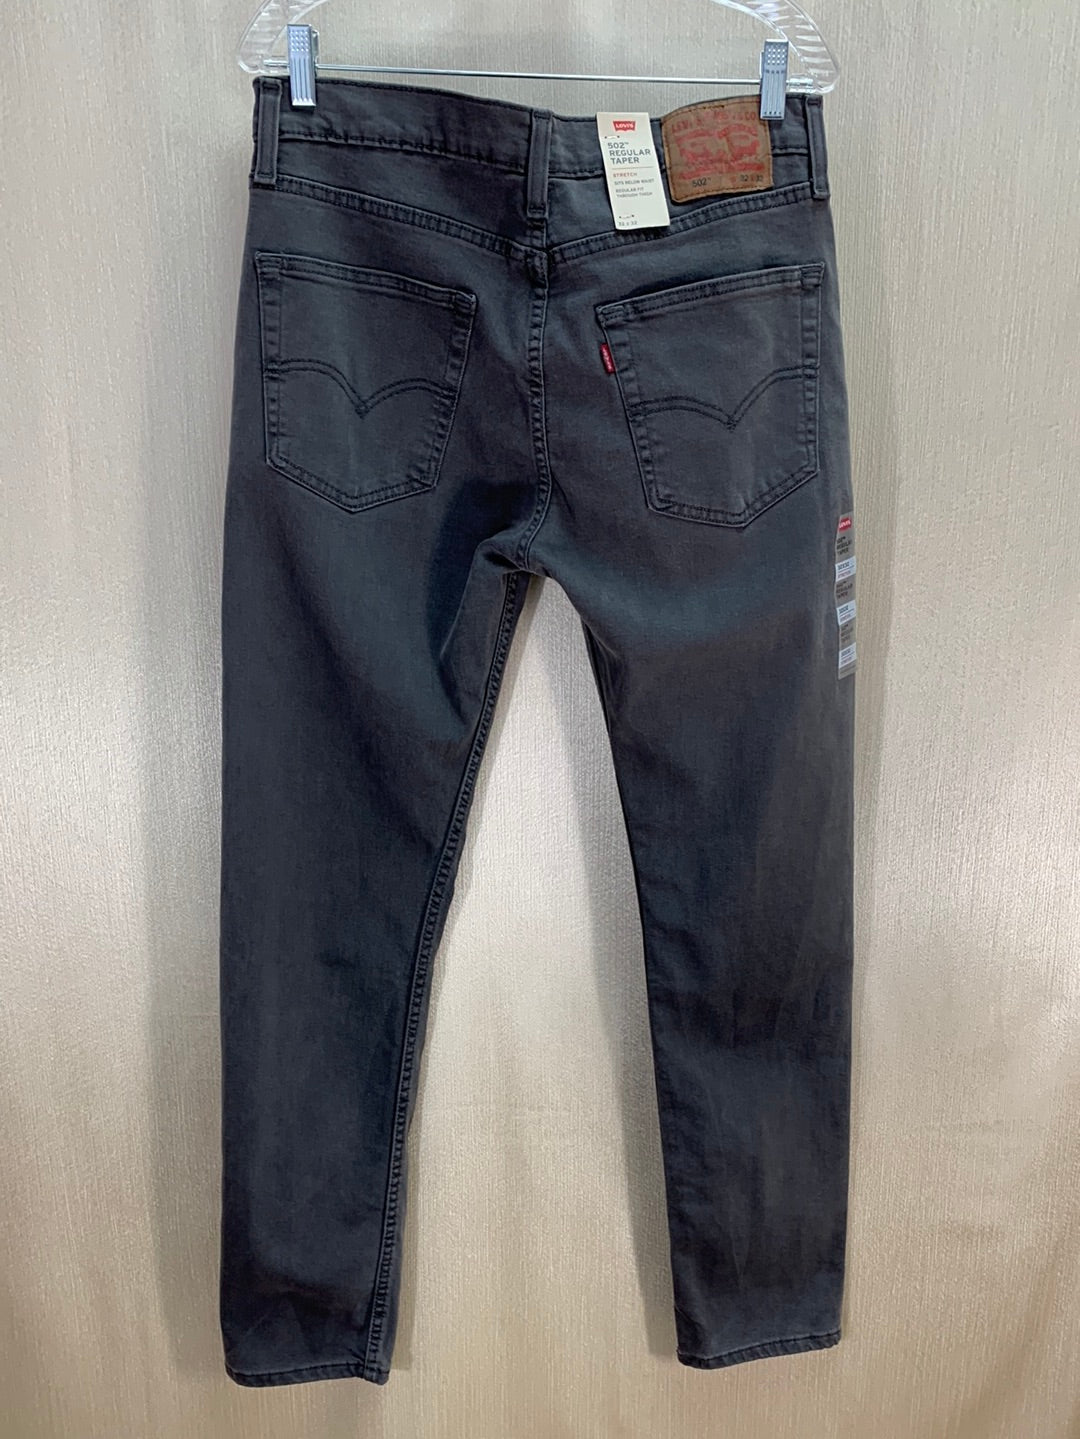 NWT - LEVI'S grey Stretch Below Waist 502 Regular Taper Jeans - 32x32